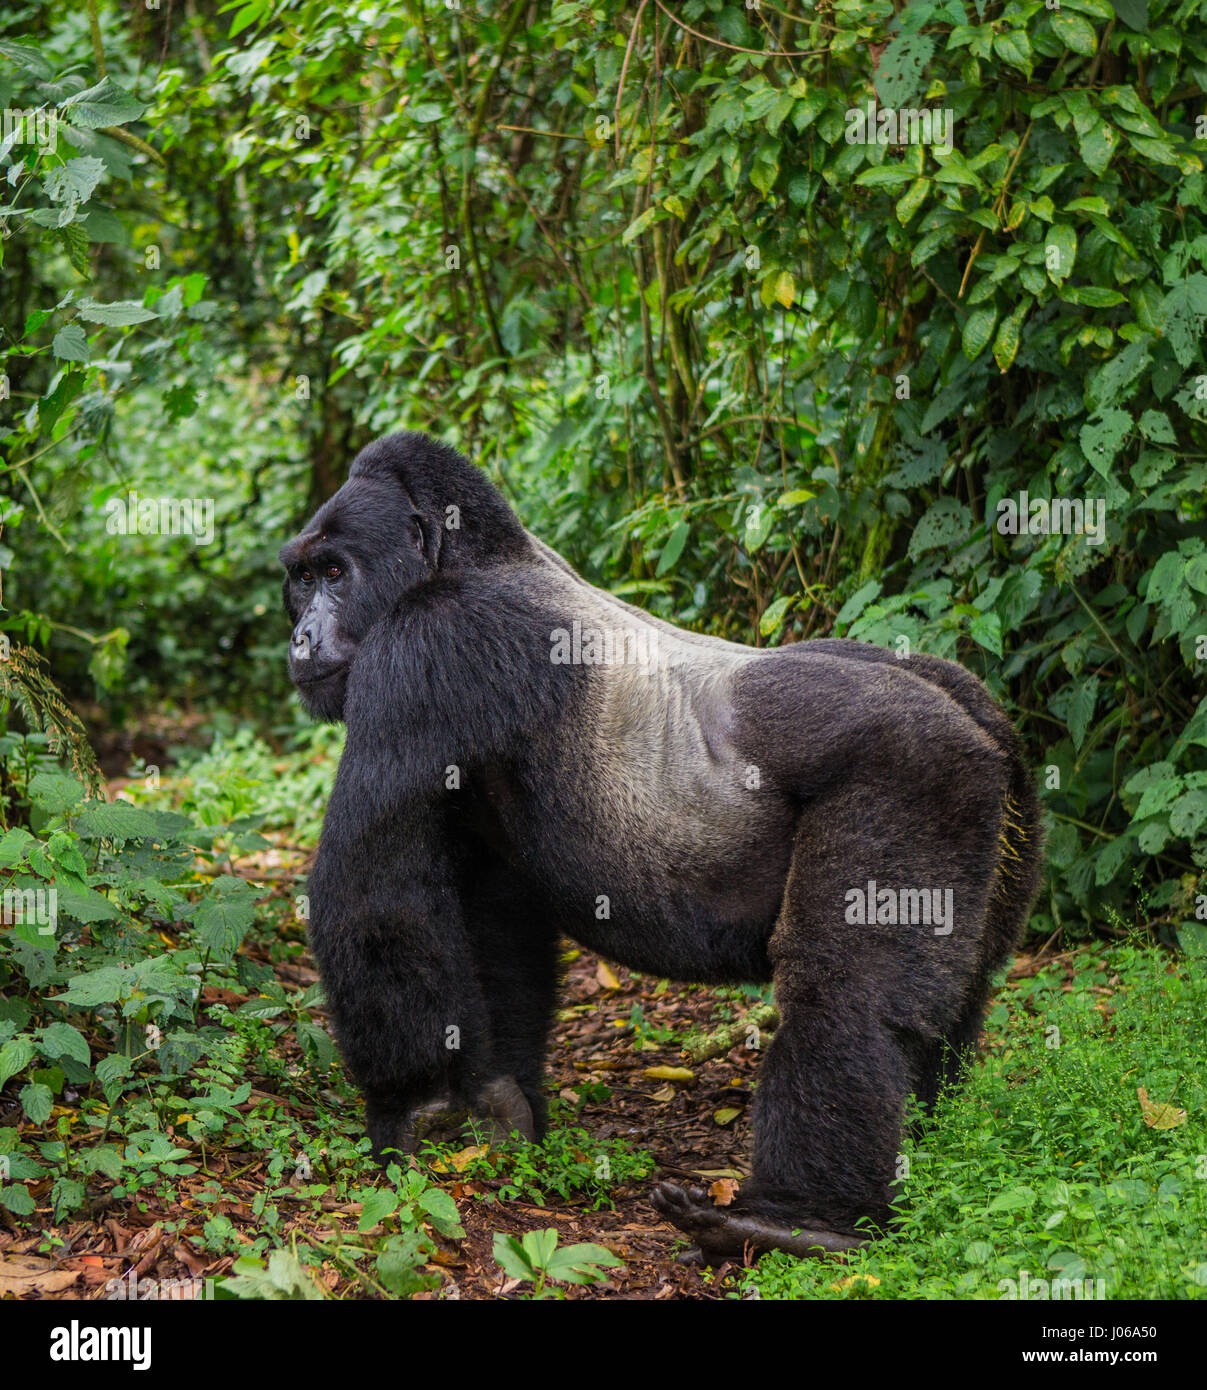 BWINDI Nationalpark, UGANDA: Ein Gorilla übte einen großen Knüppel wie eine Waffe wie er versuchte, einen Fotografen abzuwehren, die zu nahe für Komfort bekommen. Die atemberaubende Aufnahme zeigt die großen drei hundert und fünfzig Pfund Silberrücken halten den Stick auf bedrohliche Weise wie er der Fotograf schießt einen bedrohlichen Blick, als ob um zu sagen, "oughta warum ich". Andere Bilder zeigen Gorillas viel zuvorkommender drauf wie sie aus Zweigen schwingen, füttern und spielen mit ihren jungen. Einige Jugendliche Gorillas können gesehen werden, liegen wieder auf einem Ast und entspannend wie die Welt vergeht. Die Bilder wurden von Moskau Fotografen aufgenommen. Stockfoto